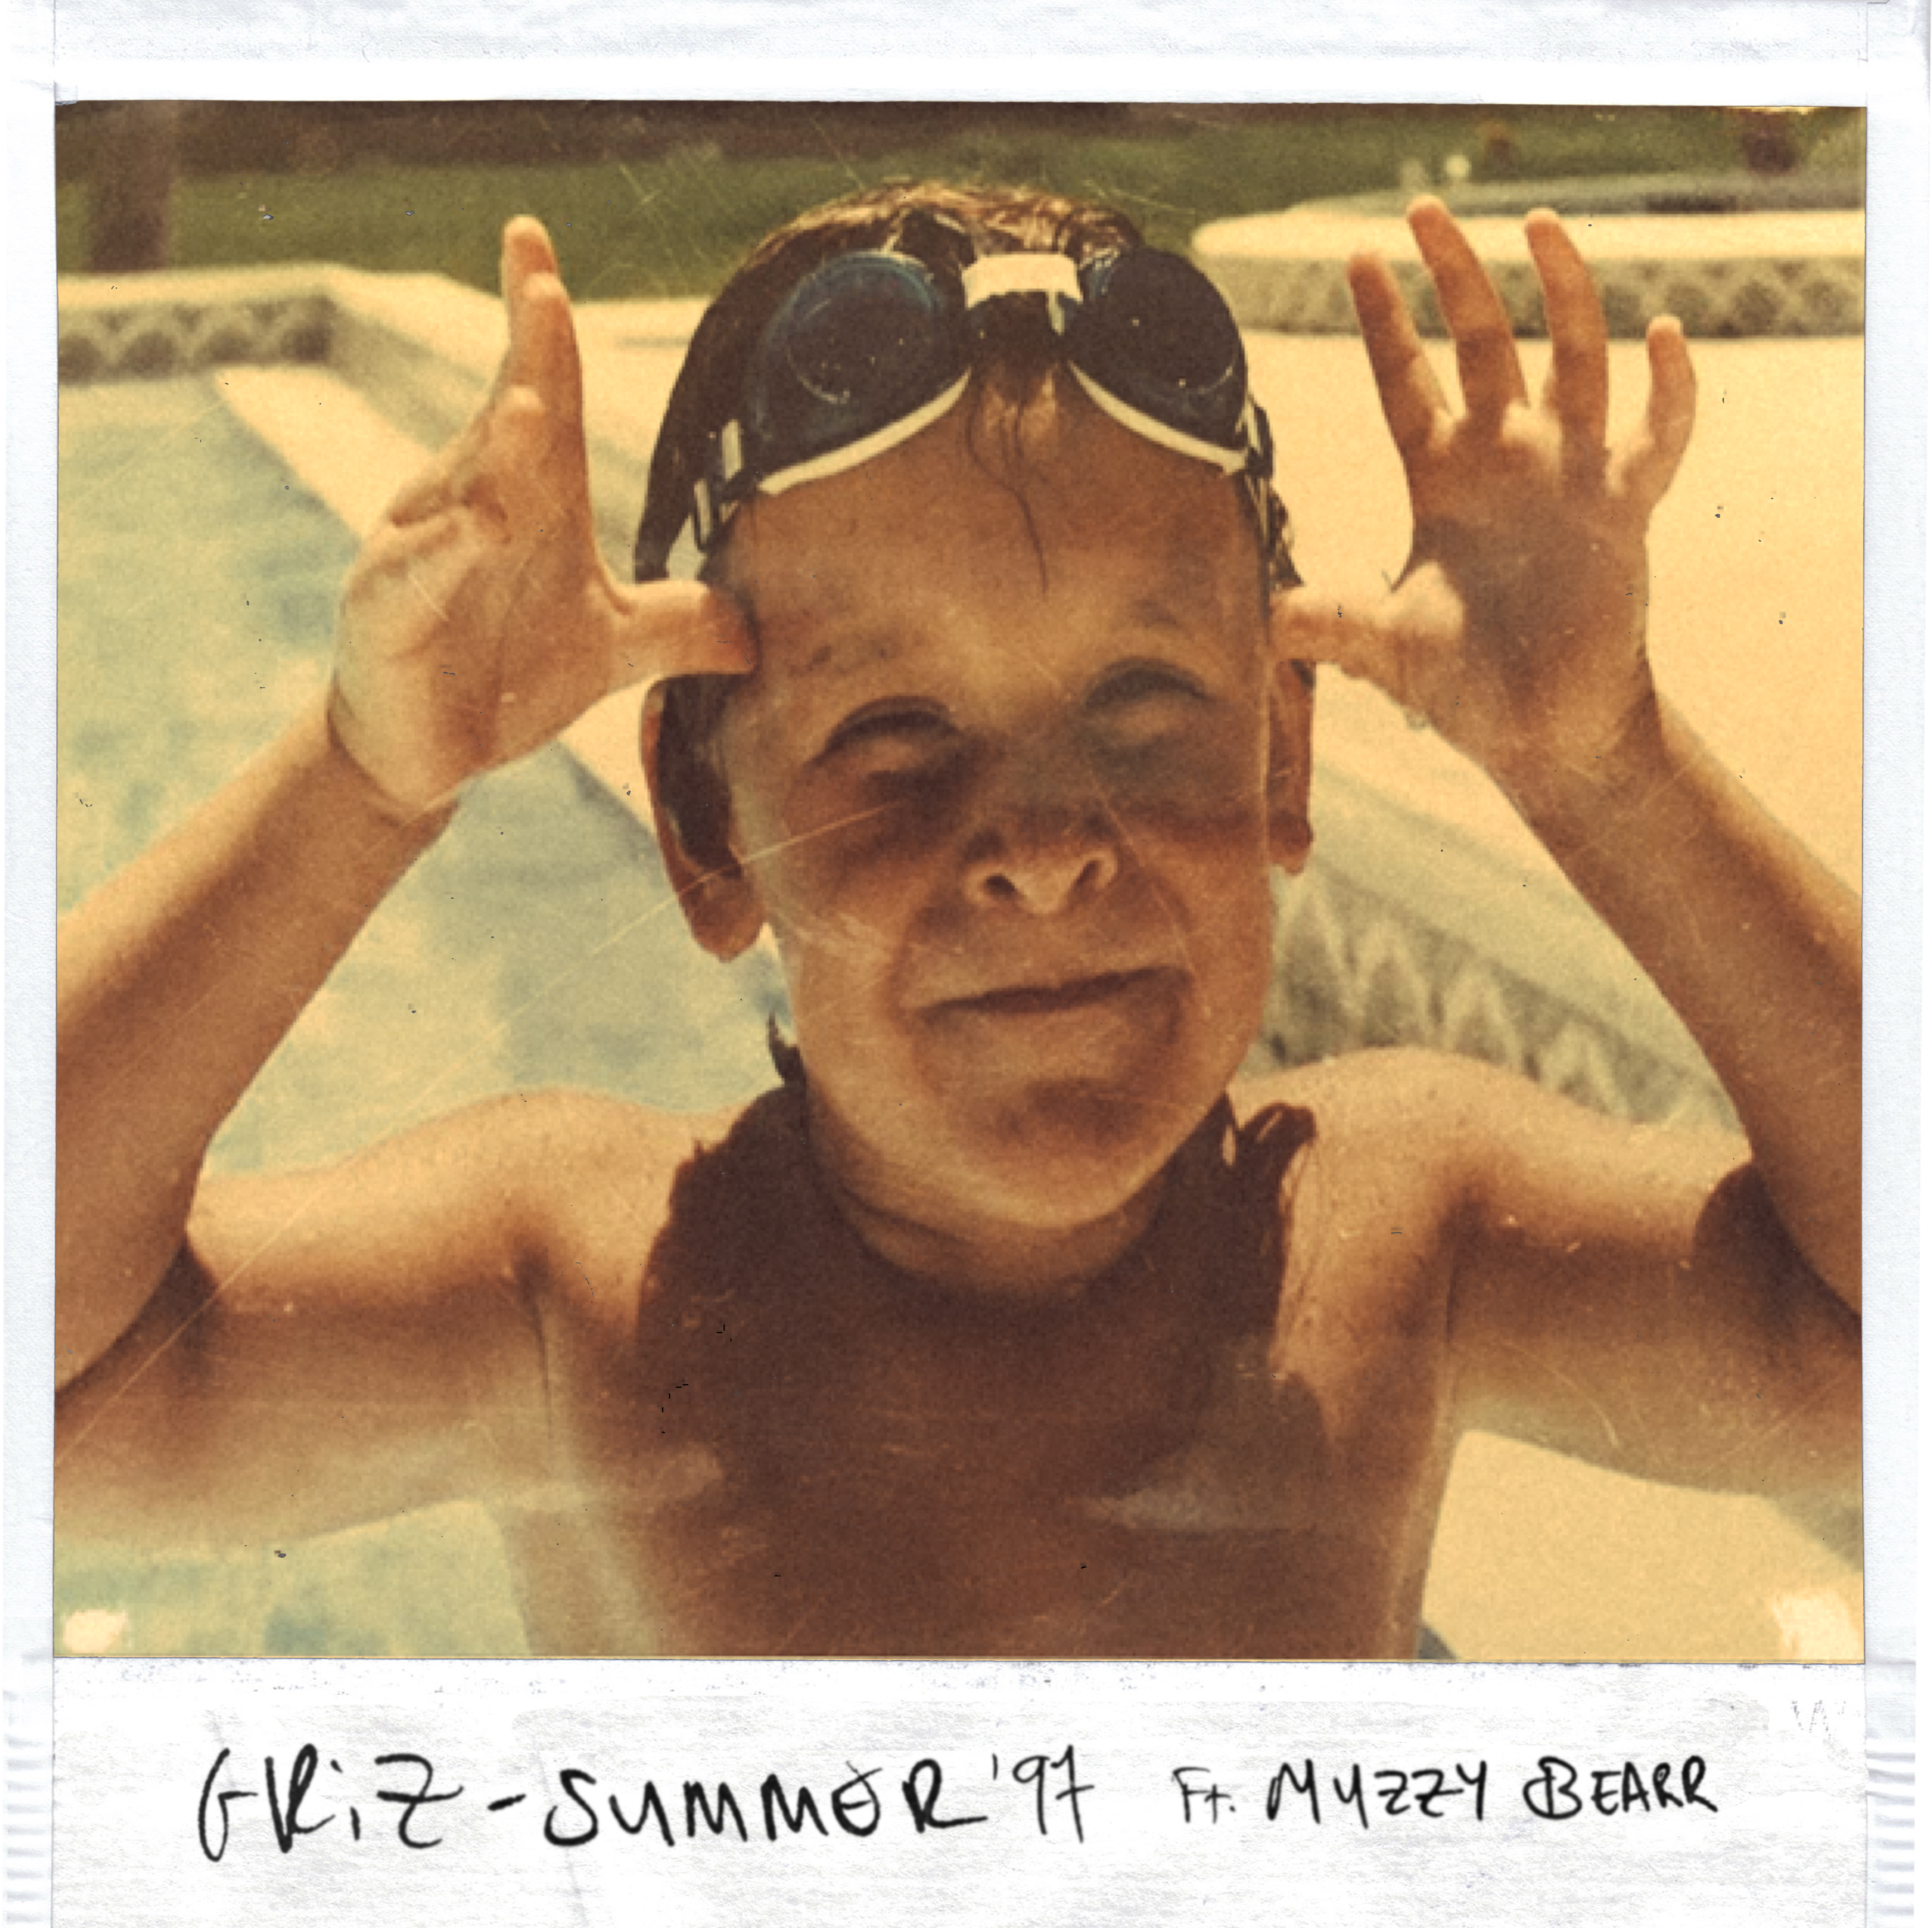 ډاونلوډ Summer '97 ft. Muzzy Bearr